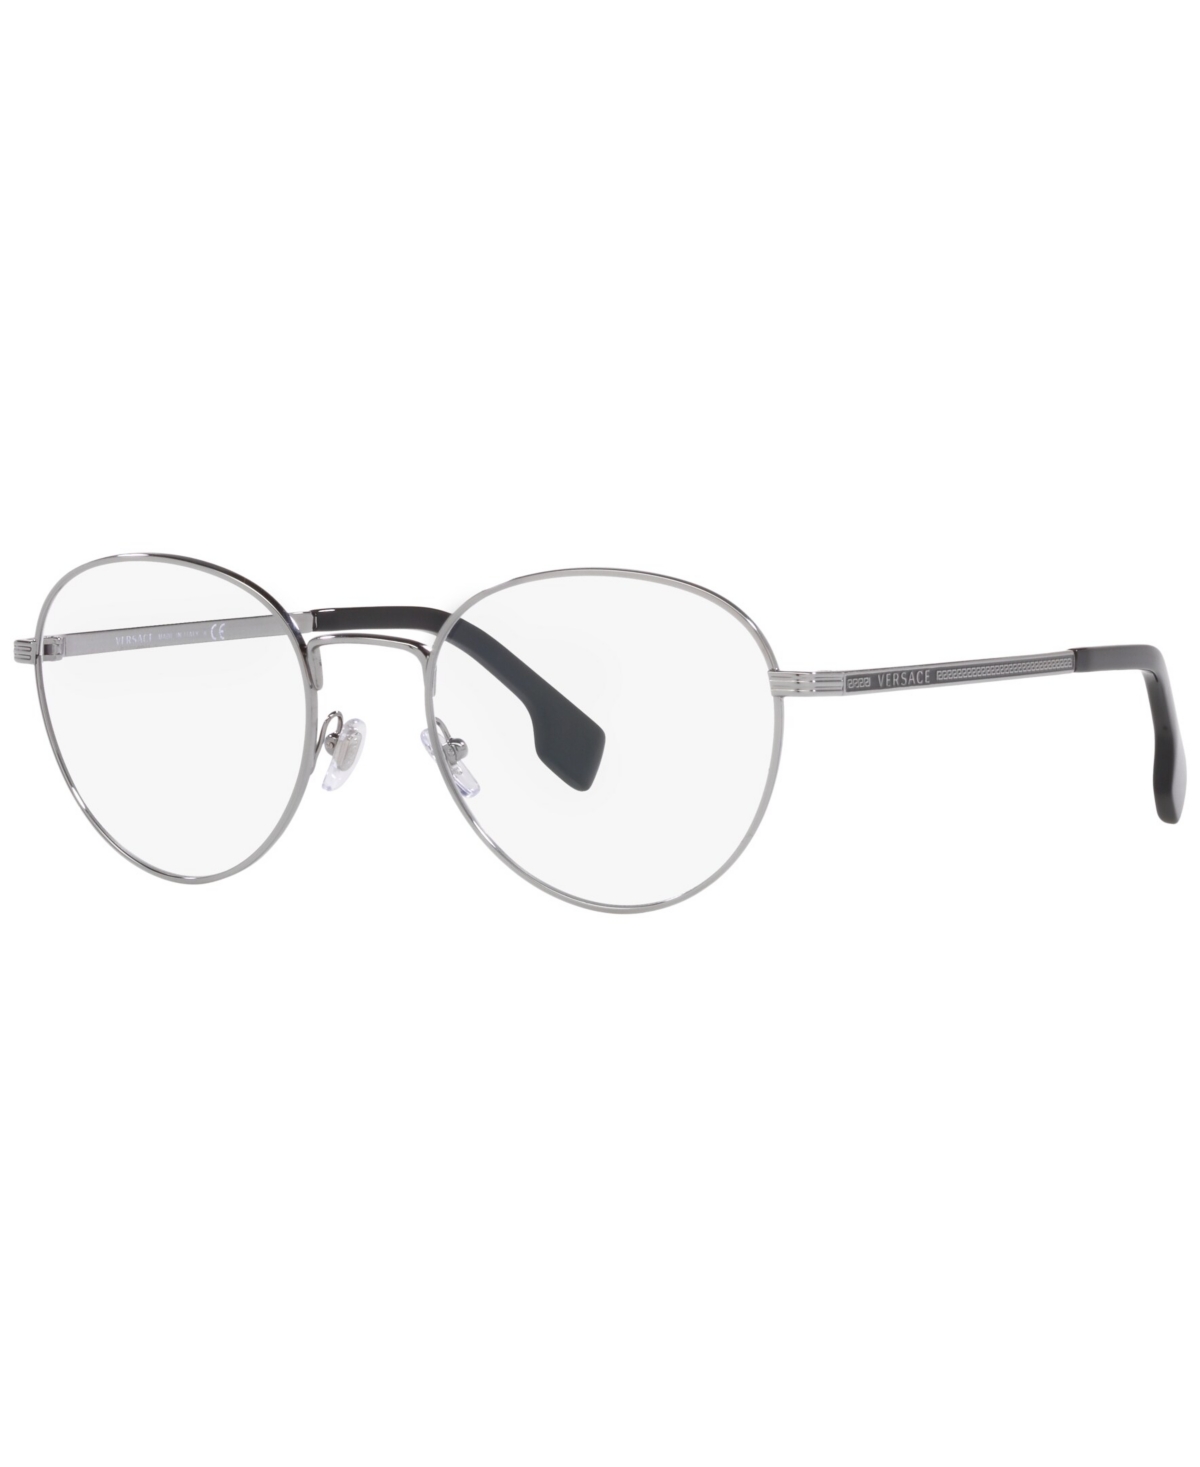 Men's Phantos Eyeglasses, VE127953-o - Gunmetal